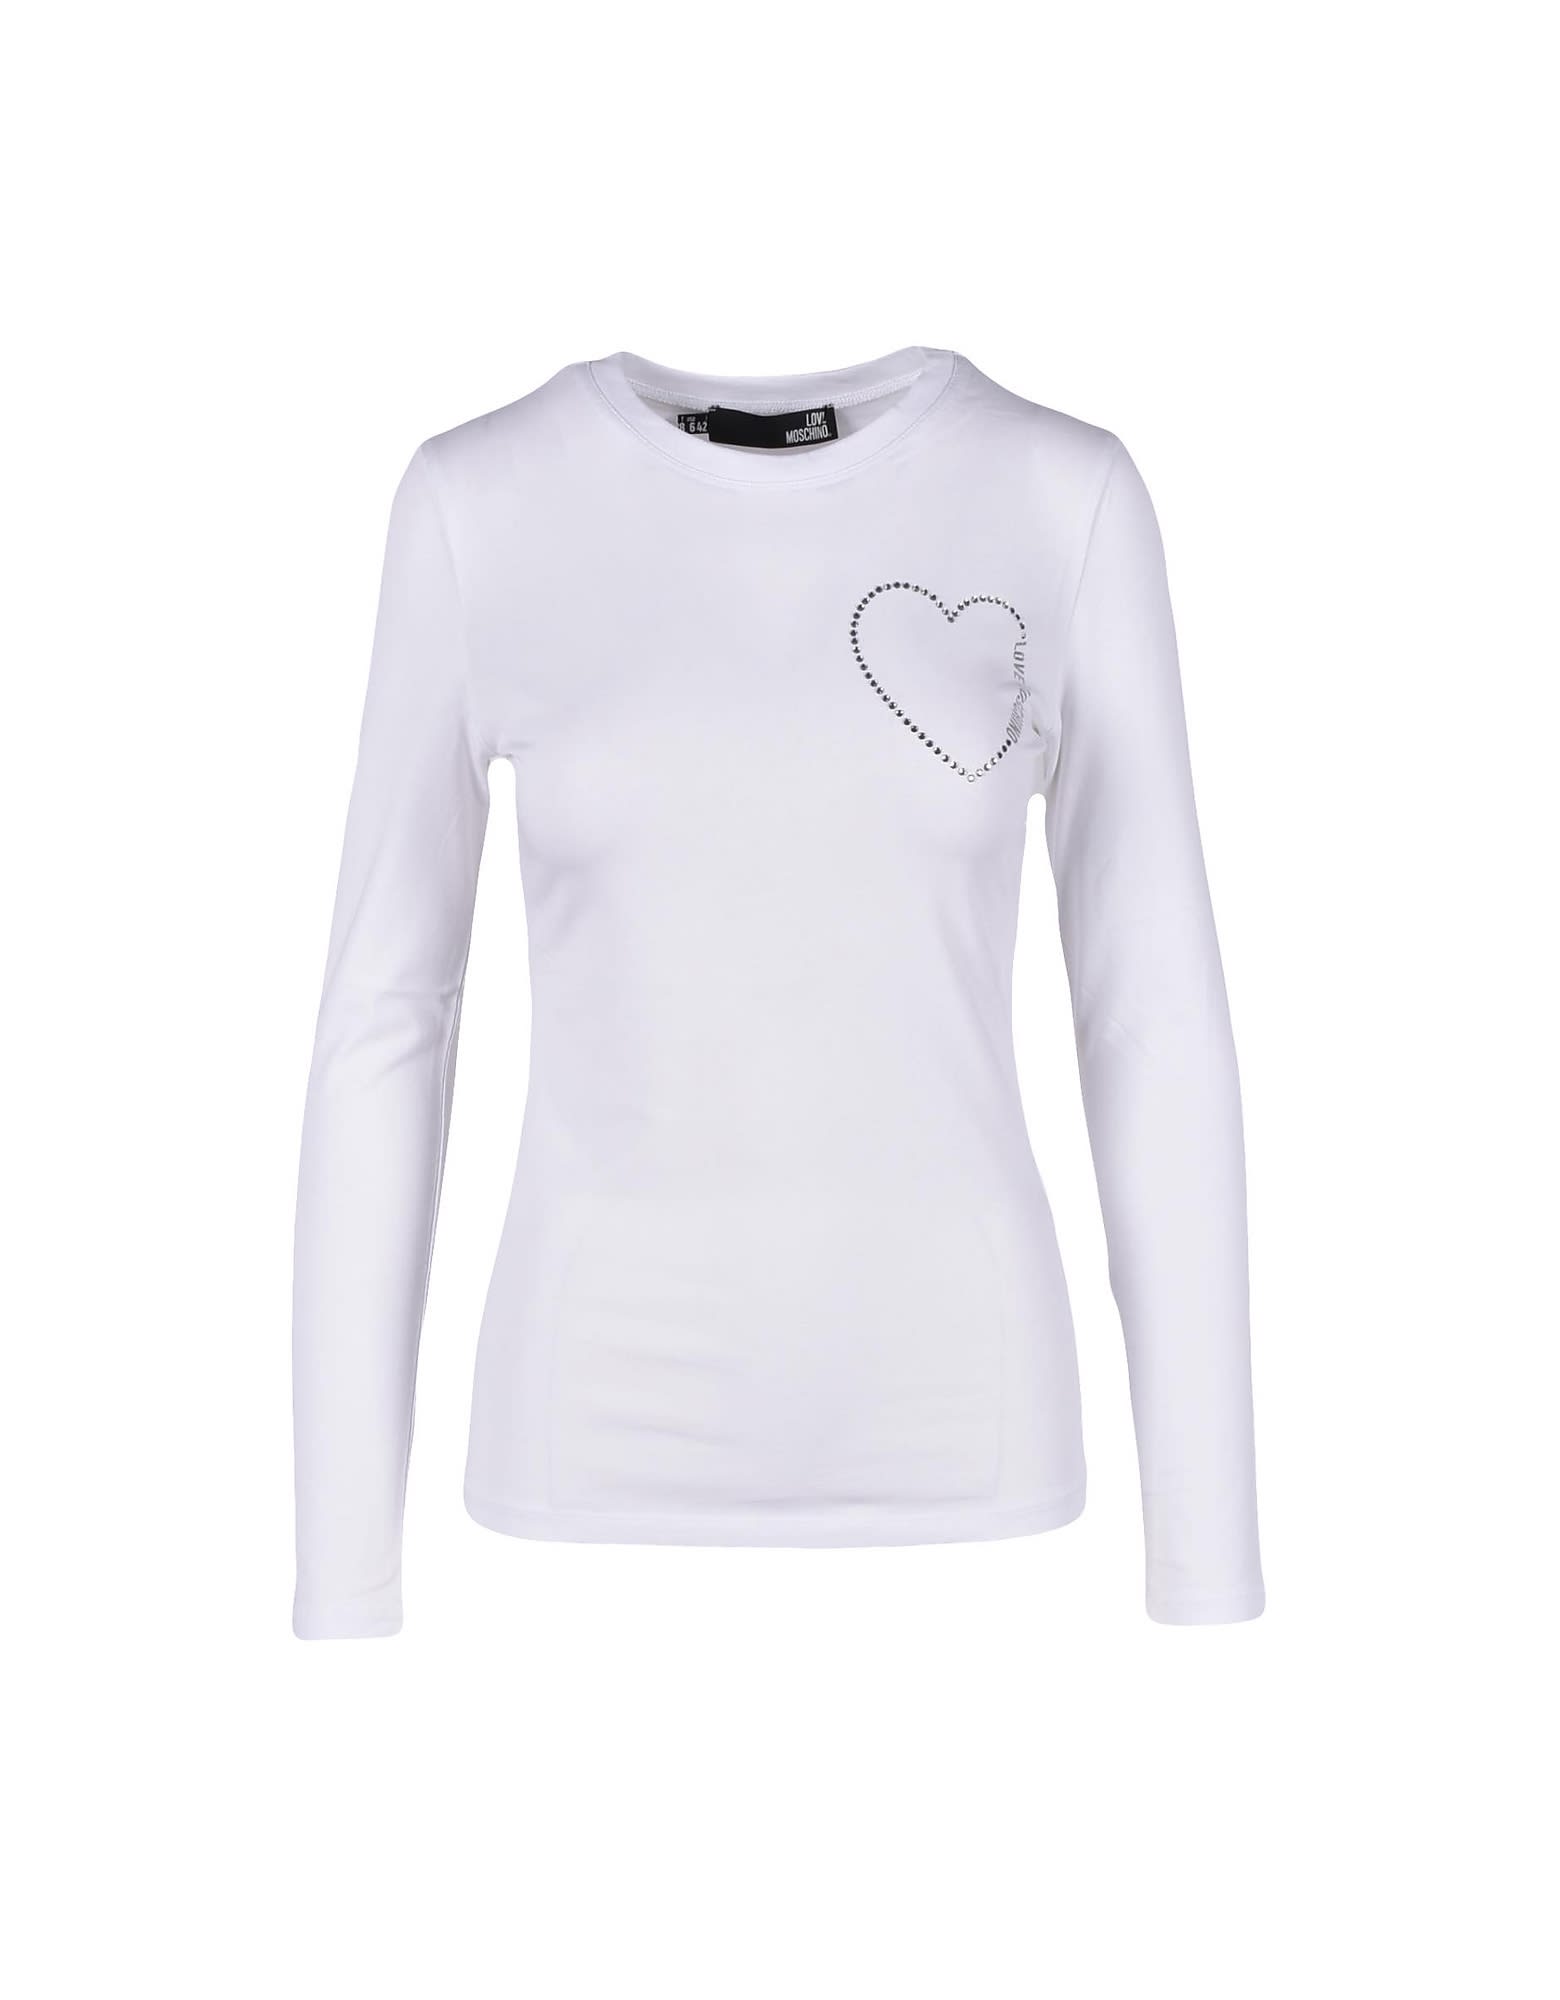 Love Moschino Womens White T-shirt